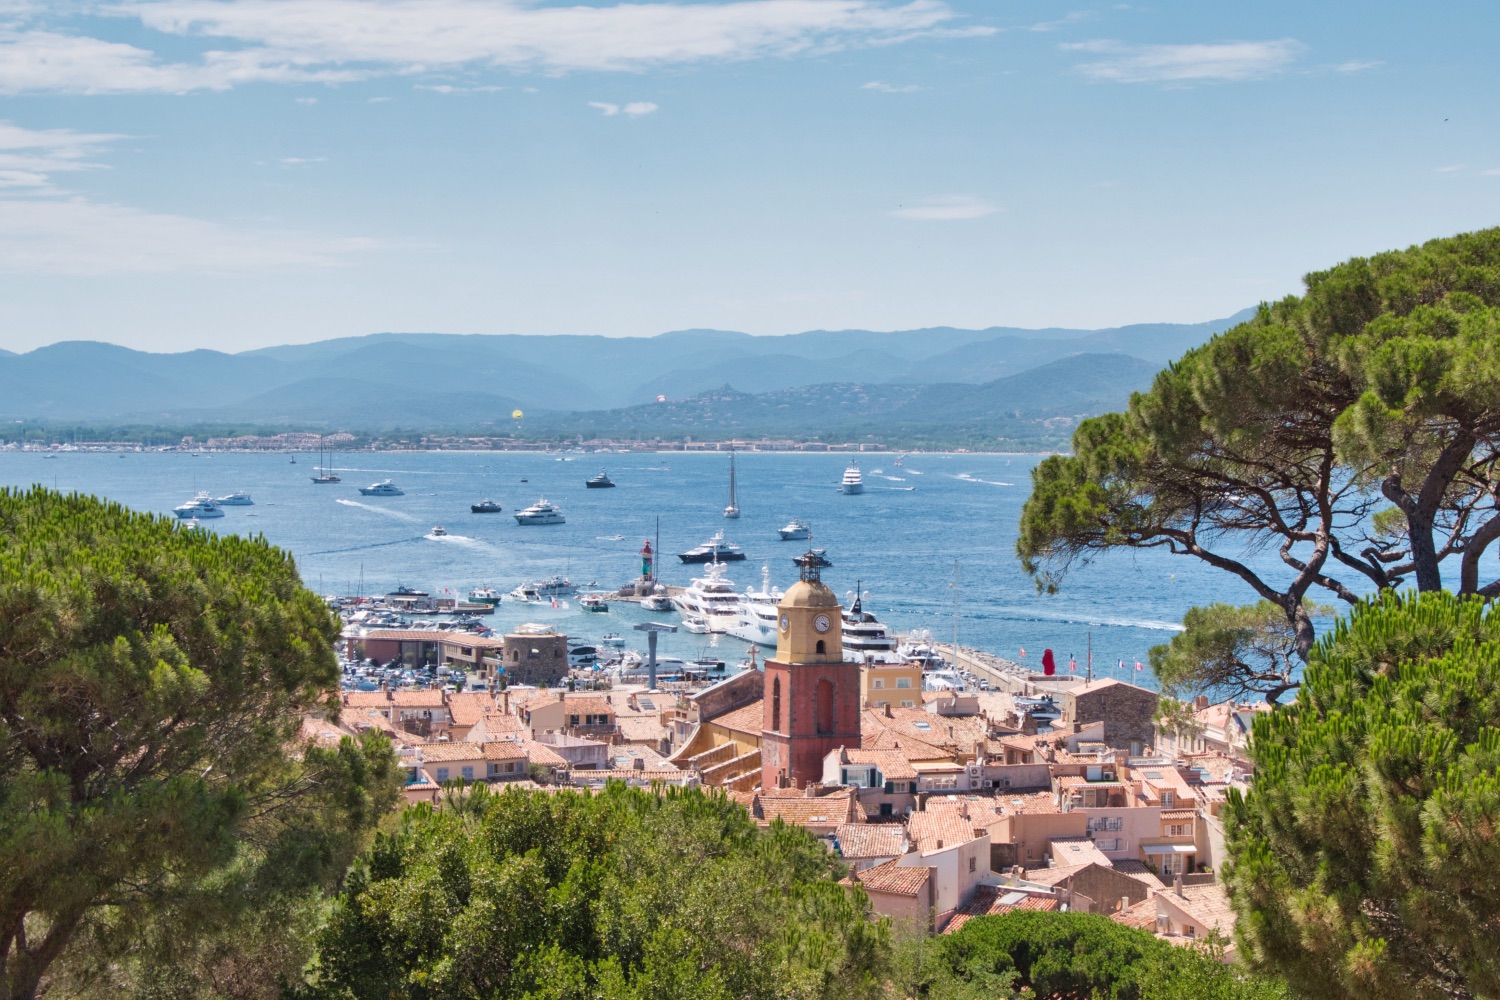 Saint-Tropez, Saint-Tropez va surtaxer les résidences secondaires pour construire des logements, Made in Marseille